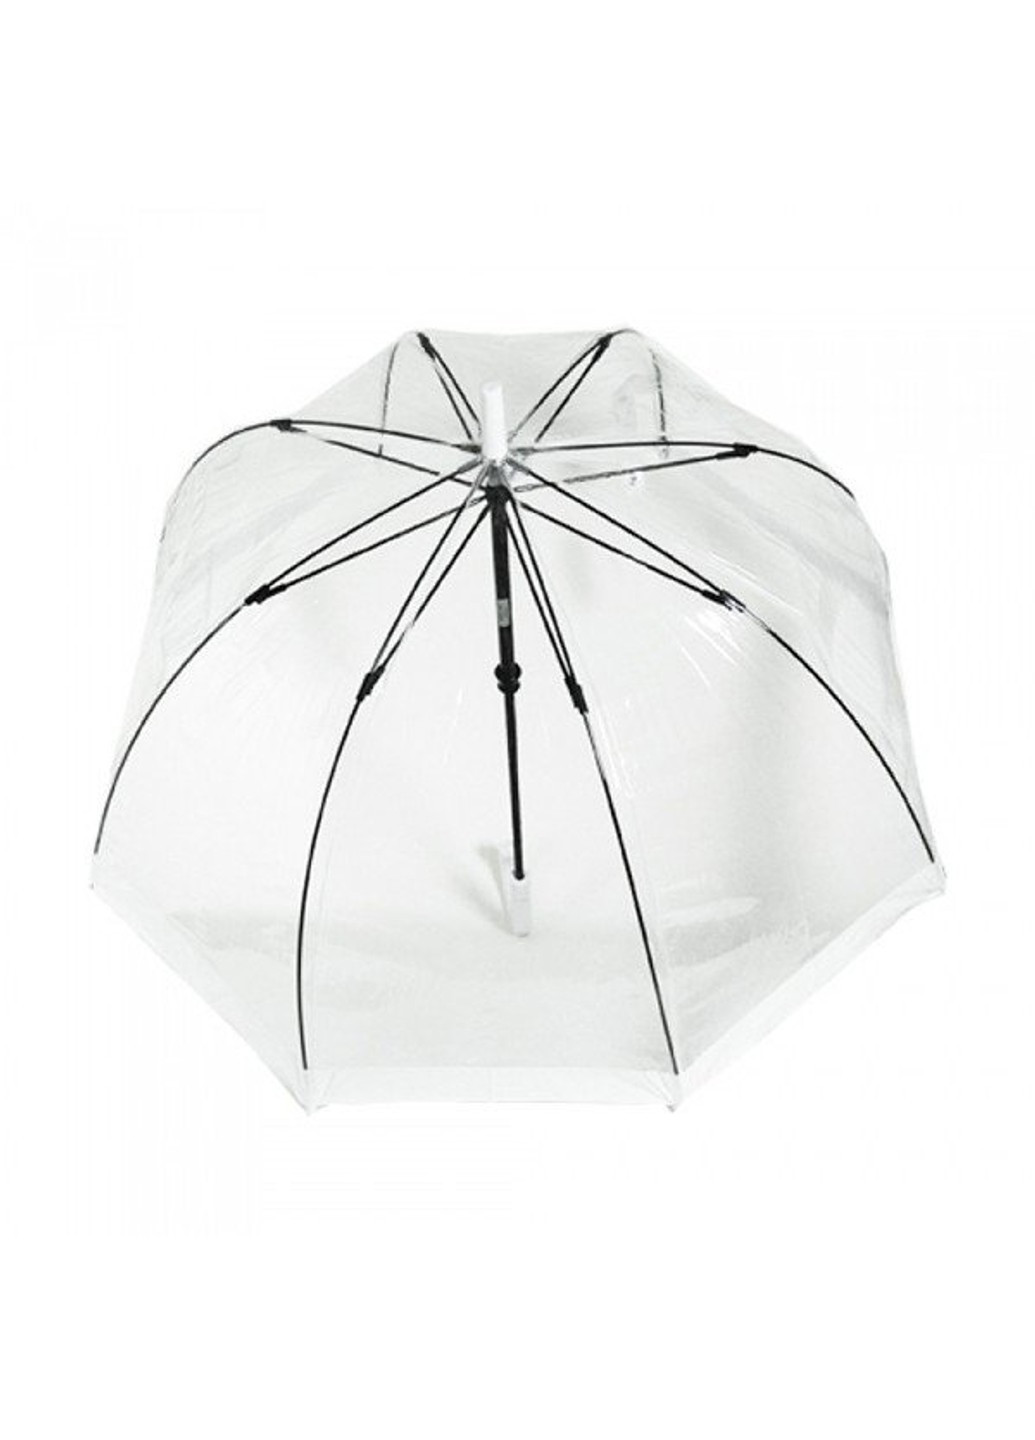 Механический женский прозрачный зонт-трость BIRDCAGE-1 L041 - WHITE Fulton (262449474)